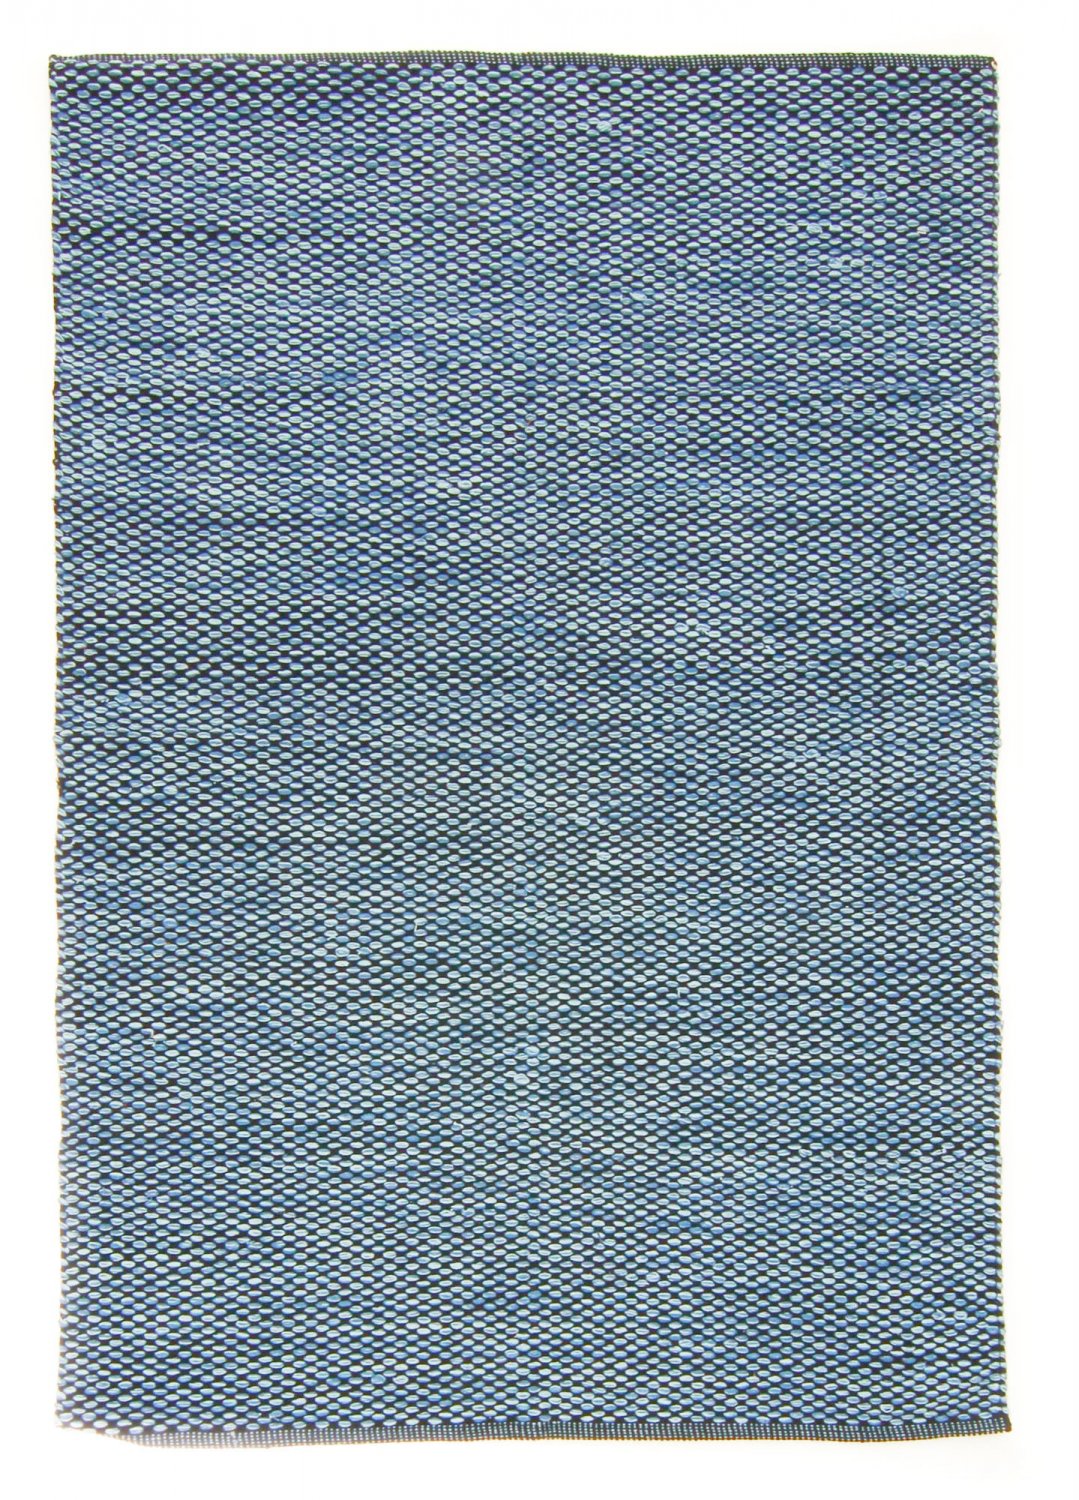 Rag rugs - Tuva (blue)